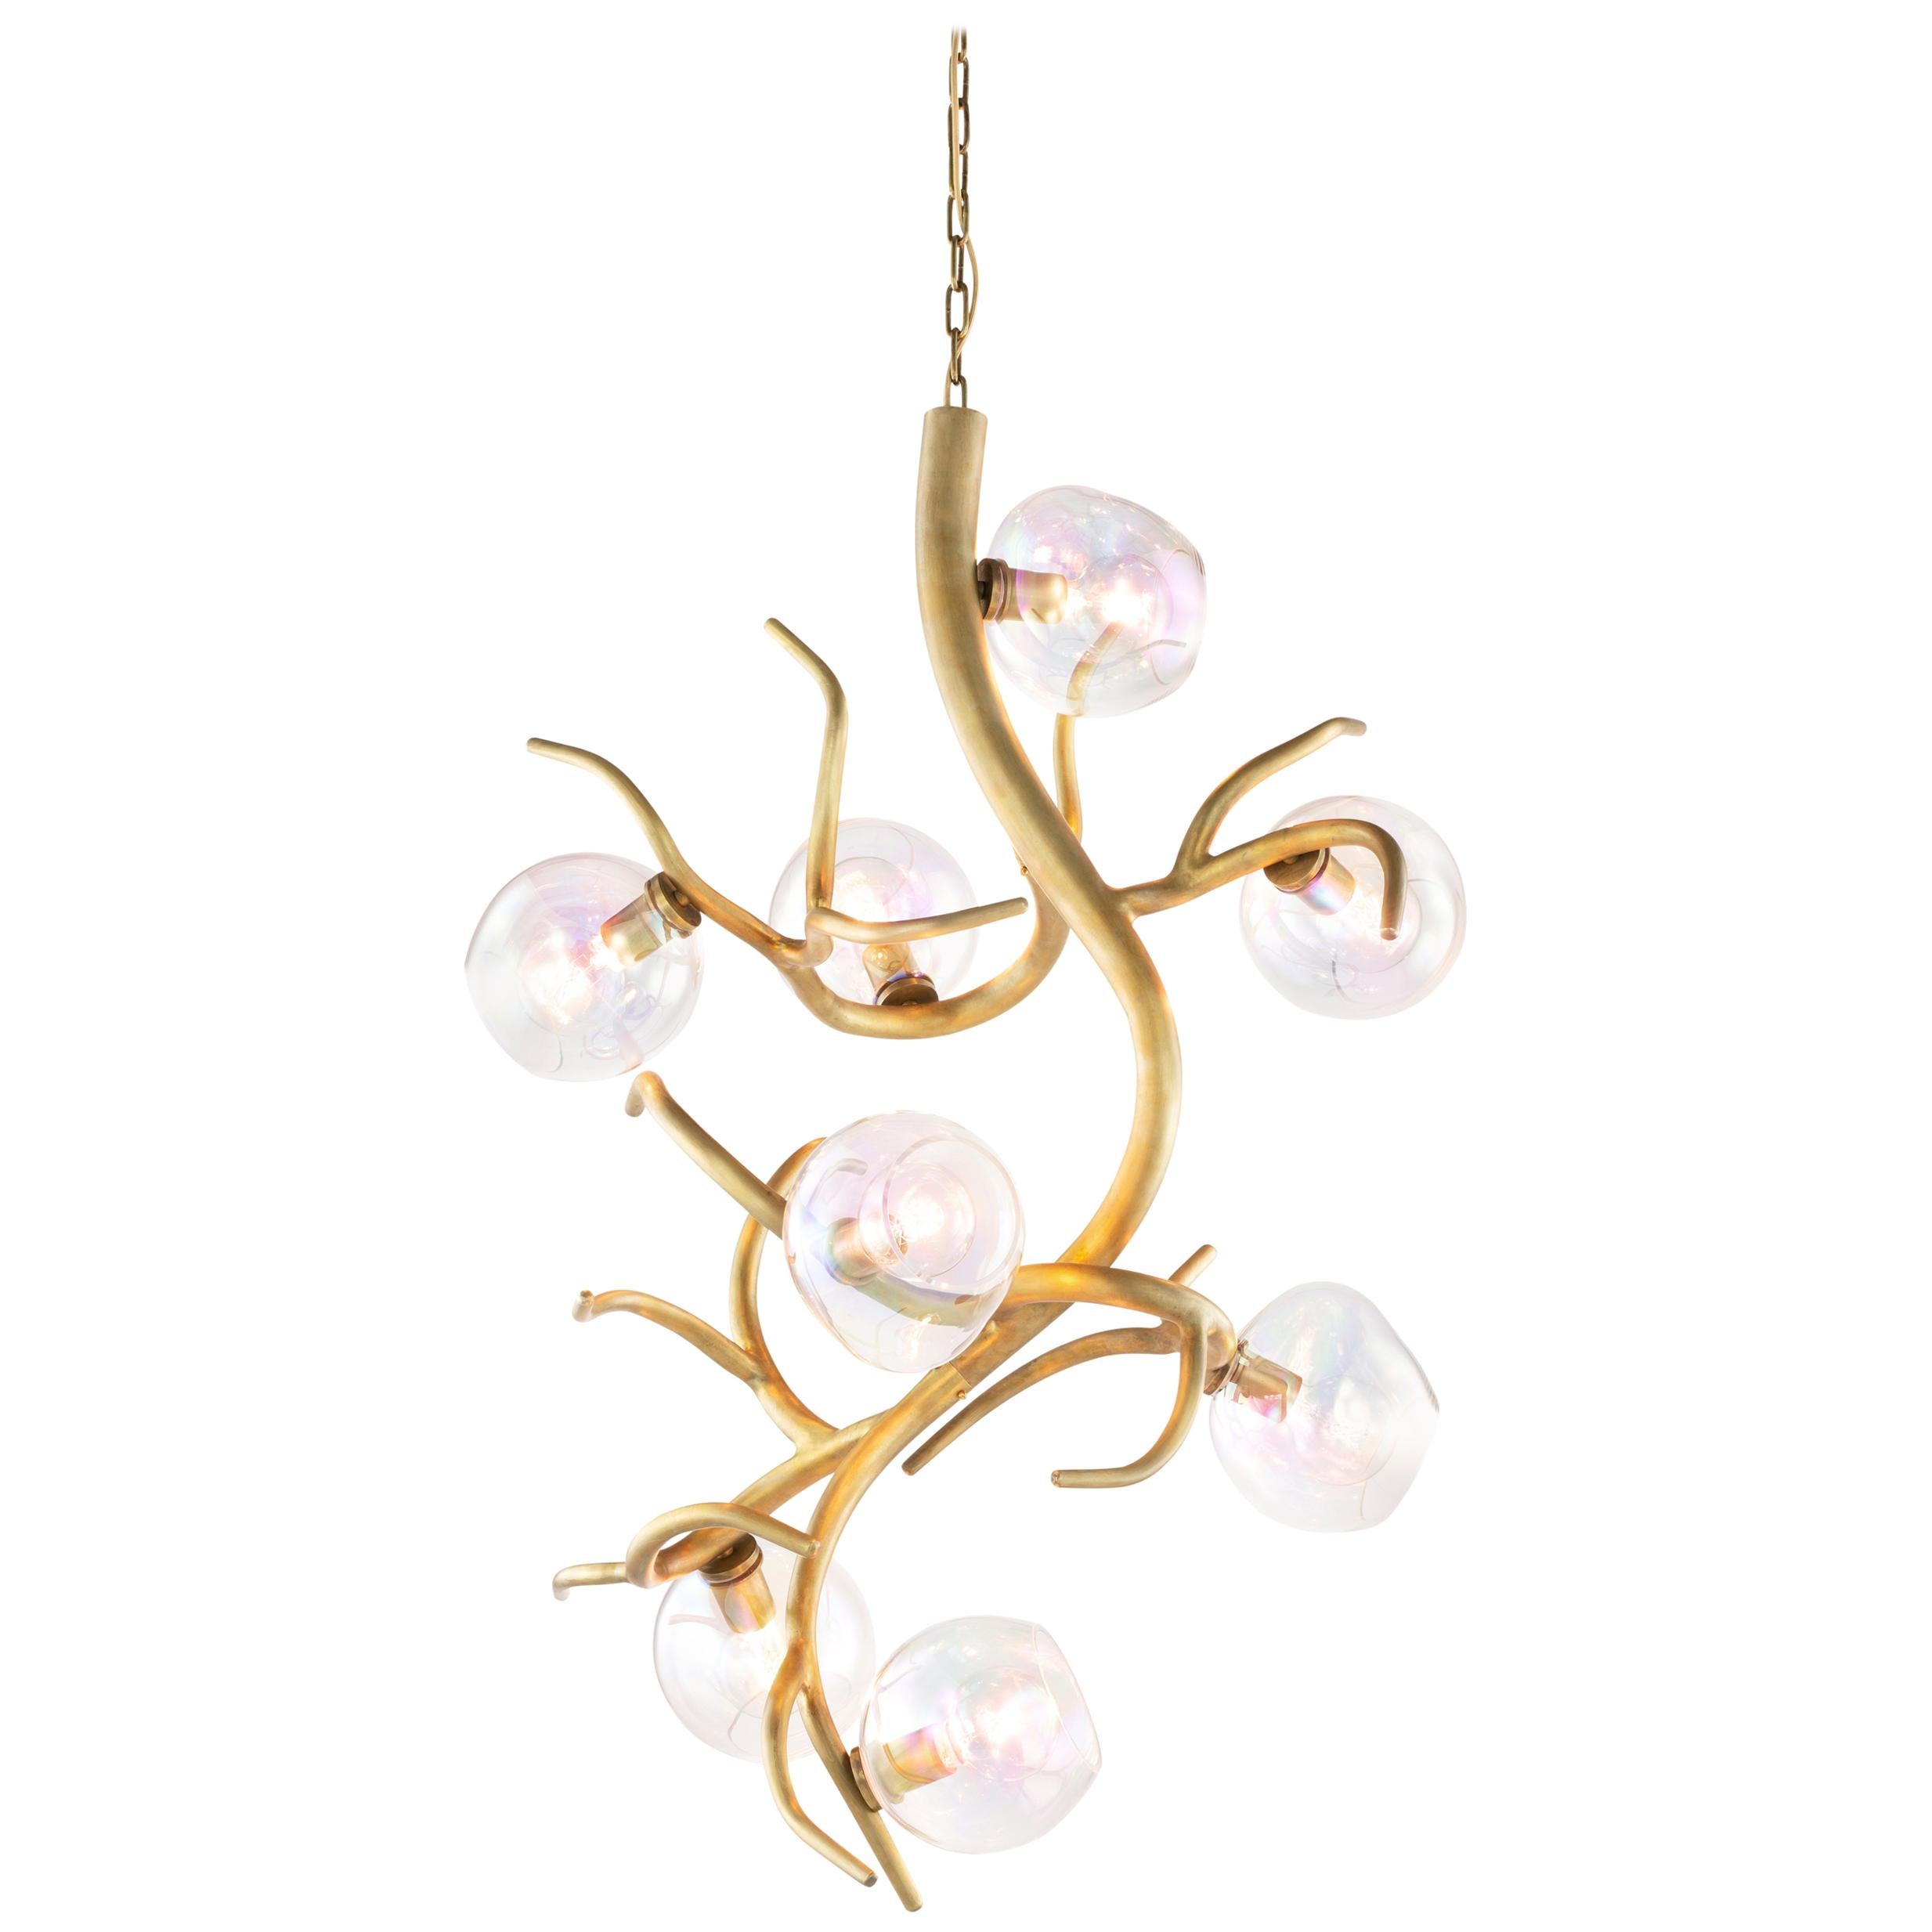 Lampe à suspension moderne en verre coloré avec finition en laiton bruni, collection Ersa